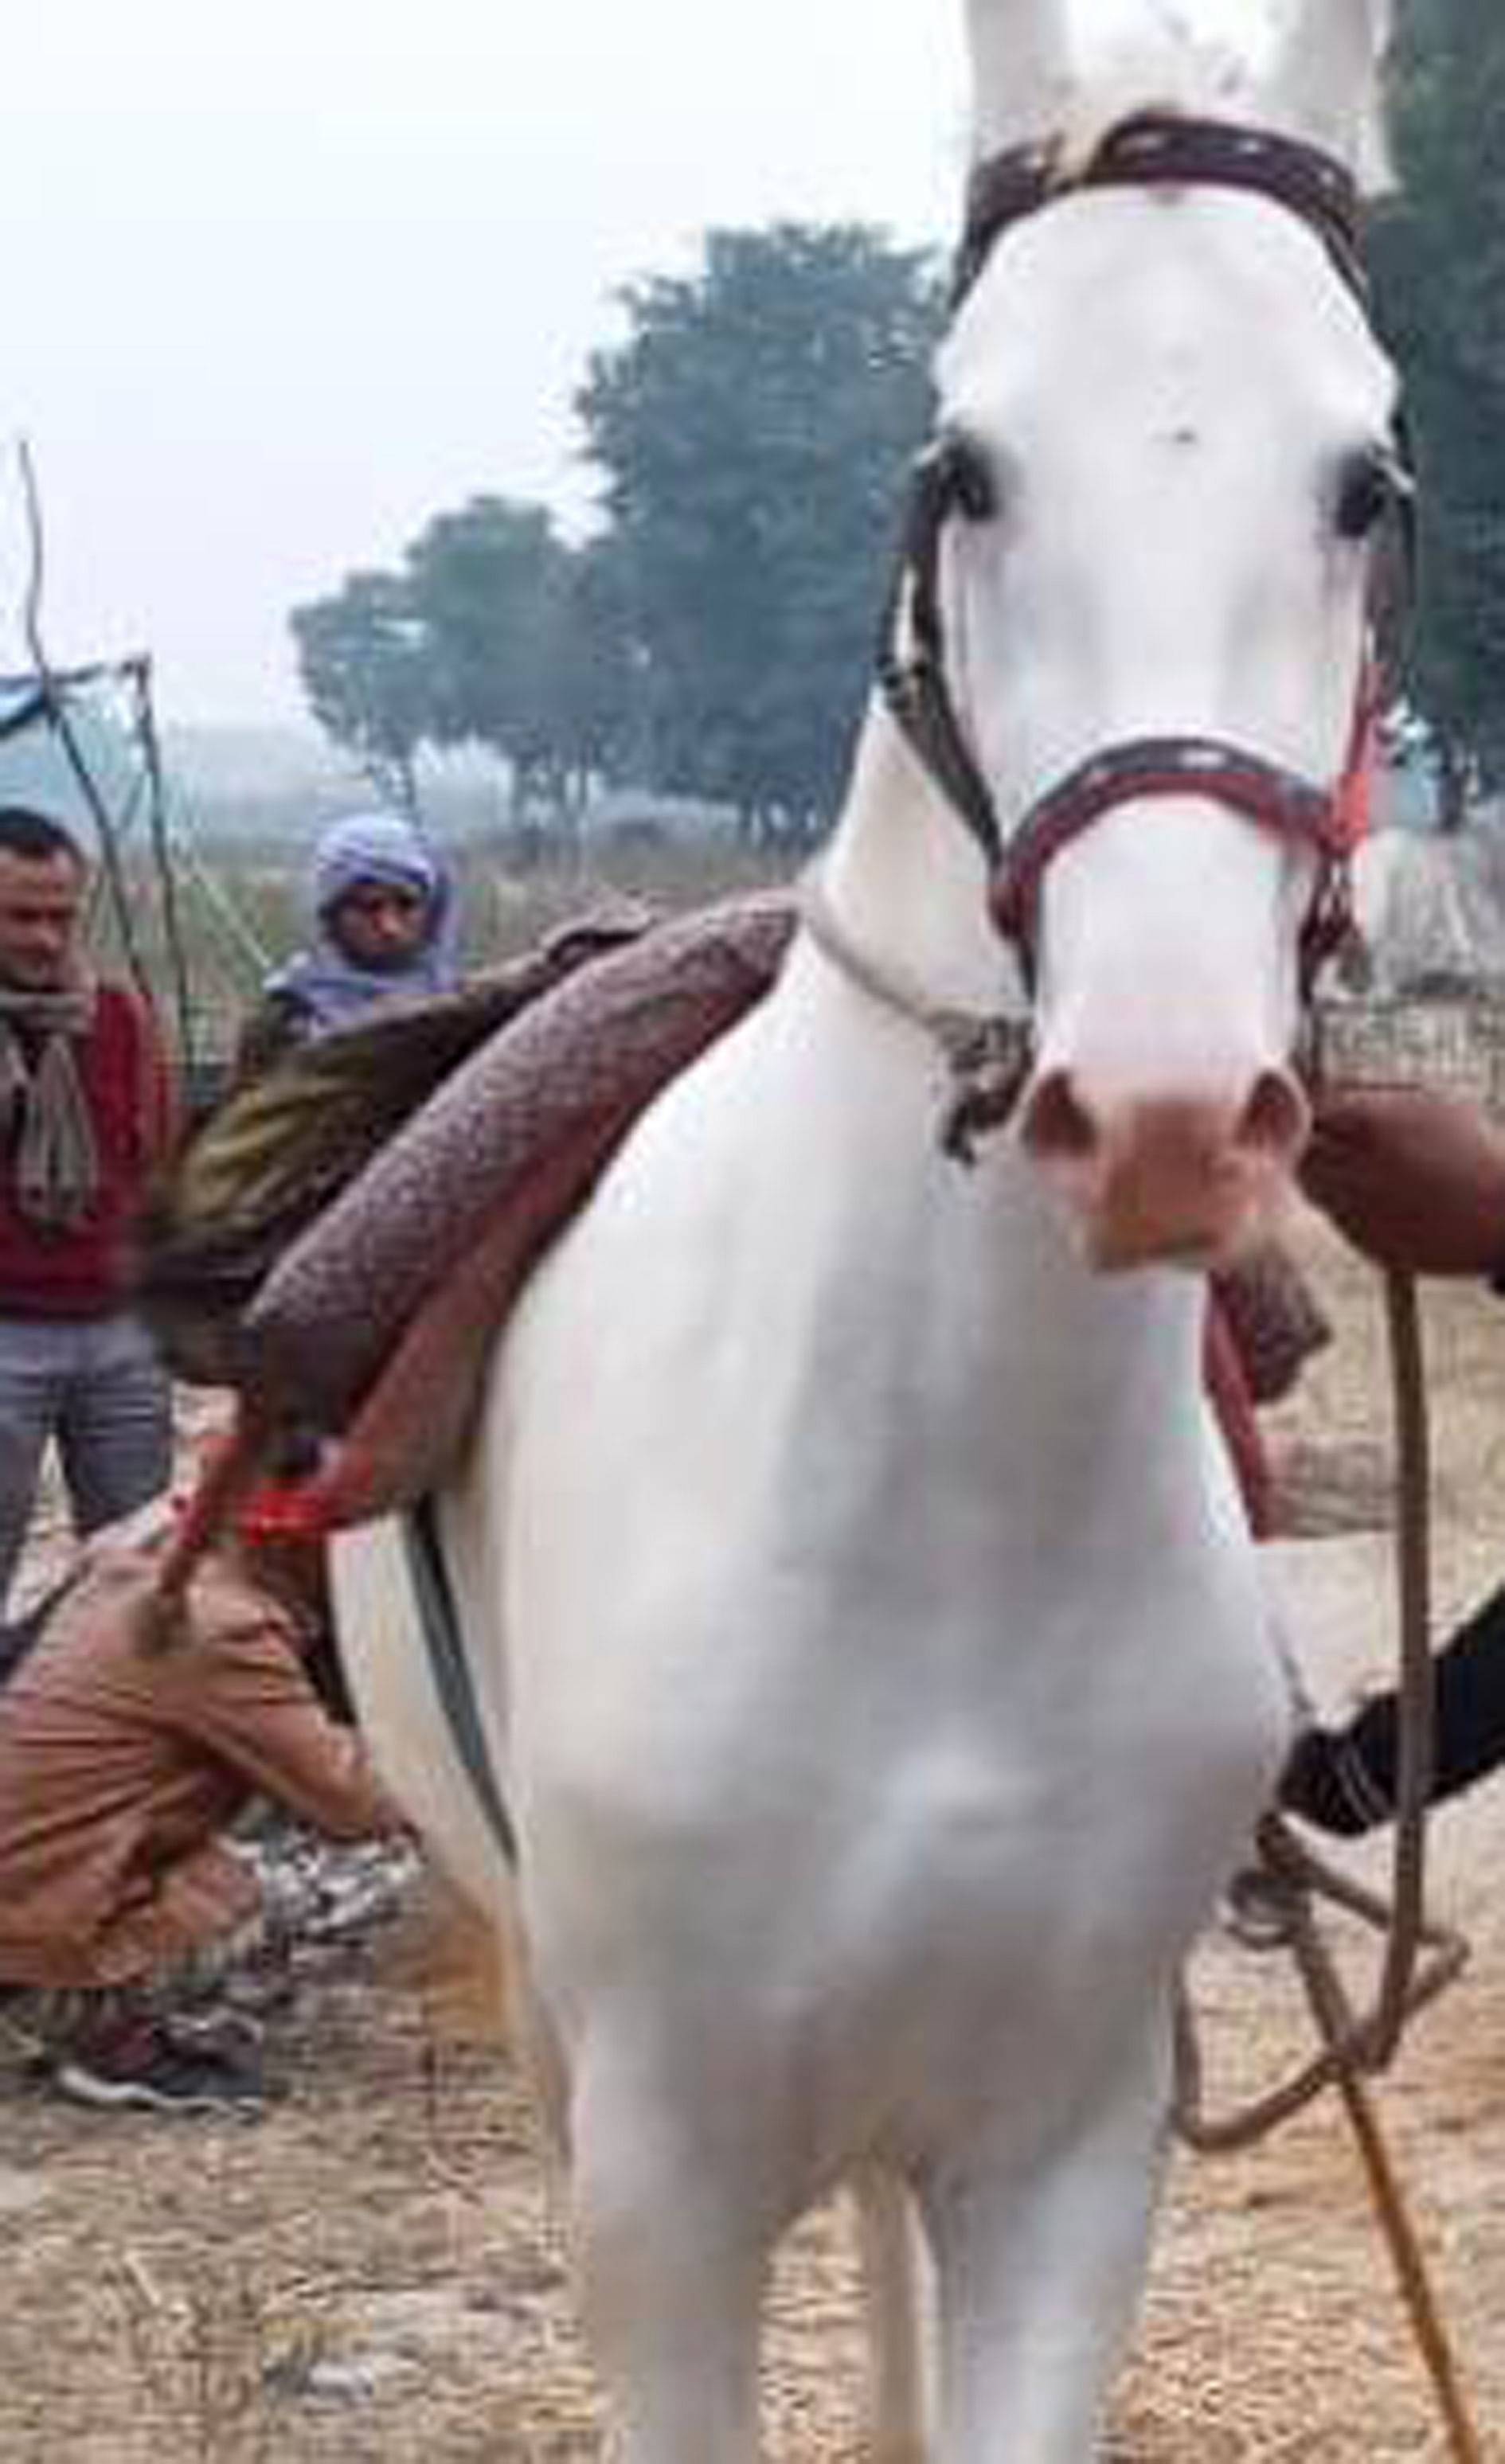 Cheval Badal d'une valeur de Rs 6 lakh atteint la foire aux bestiaux de Kasganj Soronji Shivraj